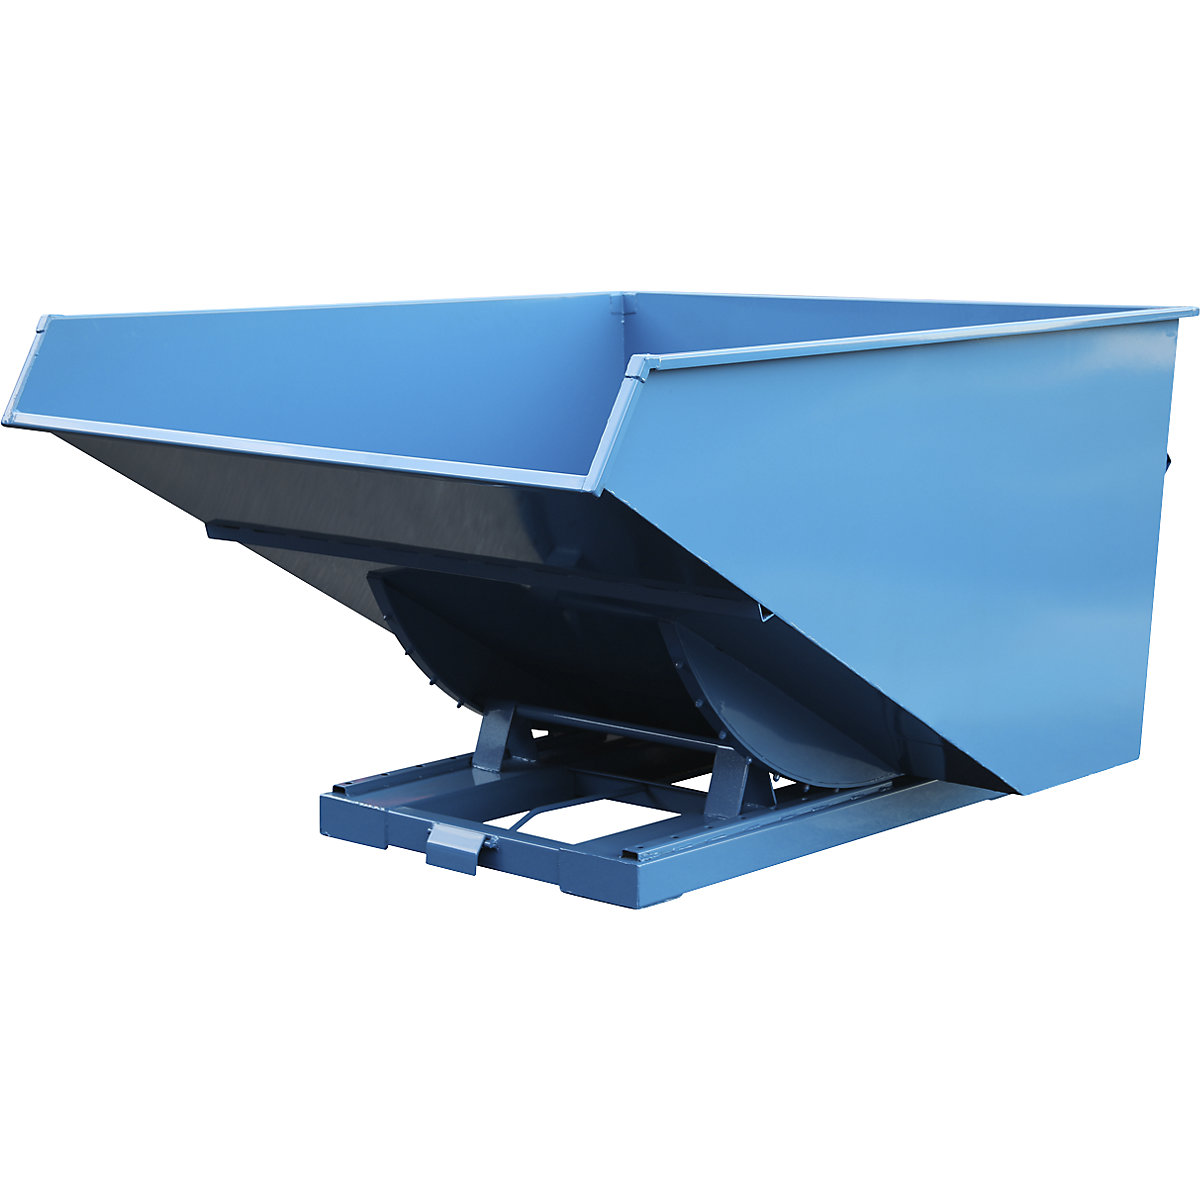 Benne basculante pour charges lourdes, force 2500 kg, bleu, capacité 3 m³-1